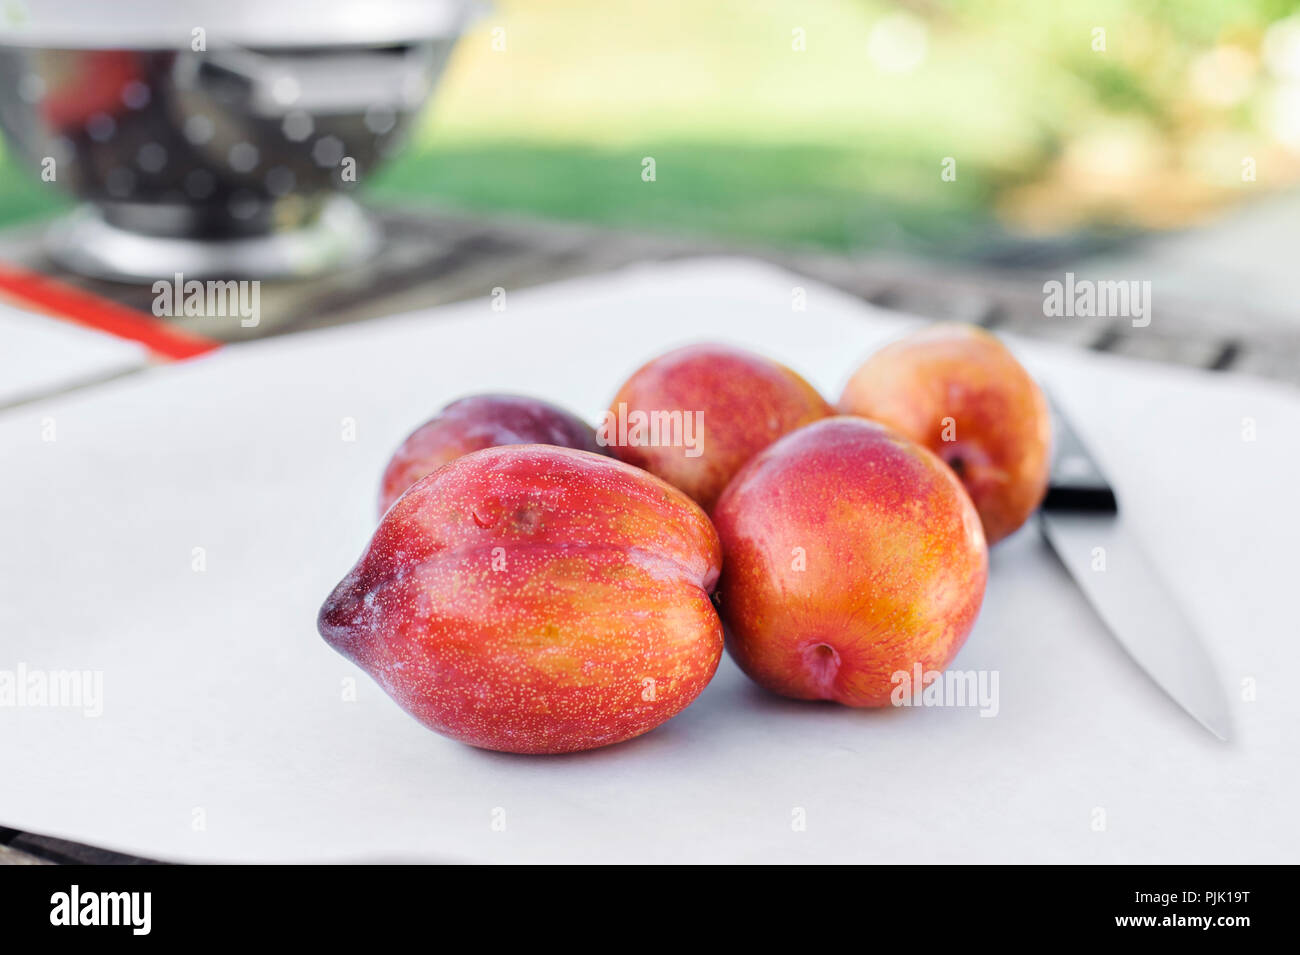 Fünf amigo pluot Früchte auf weißem Papier mit einem Messer Stockfoto